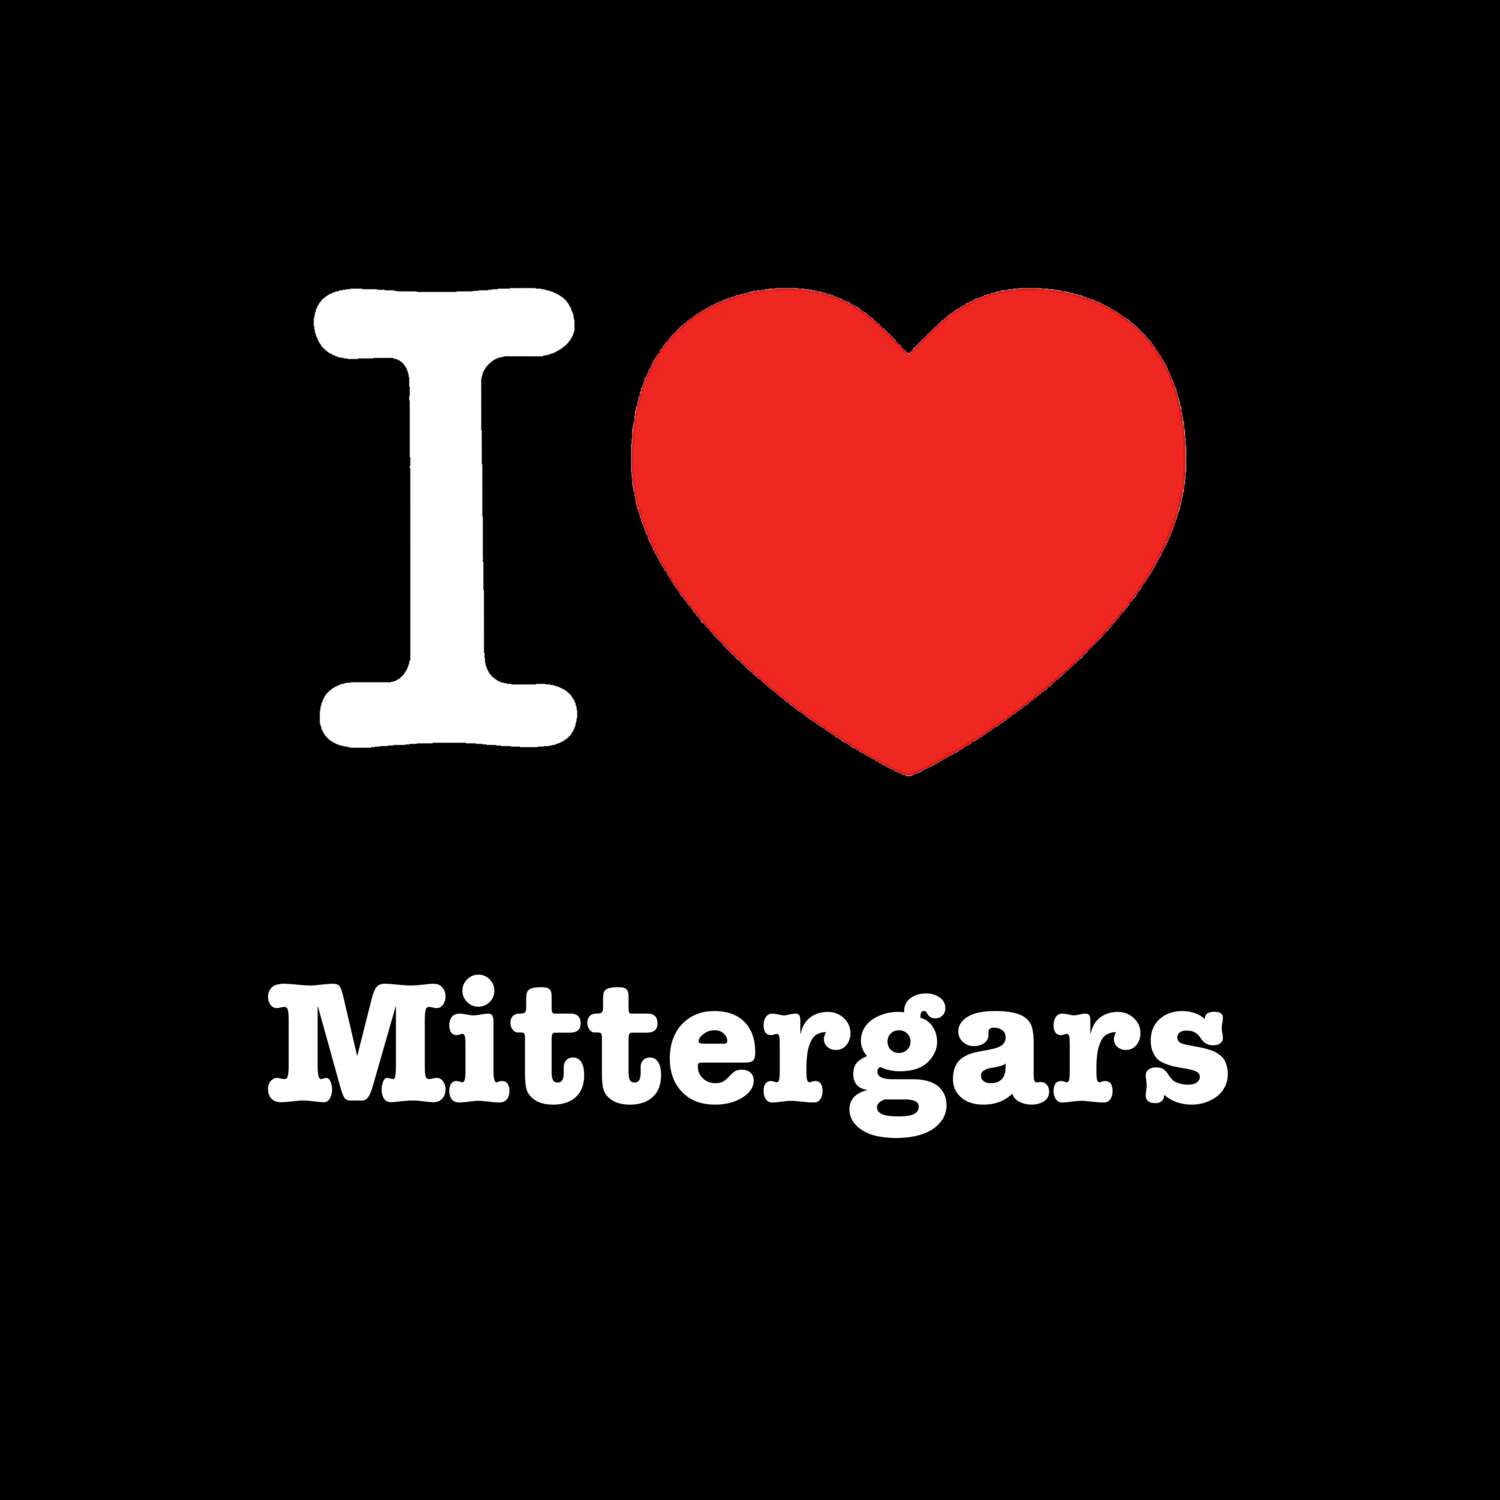 Mittergars T-Shirt »I love«